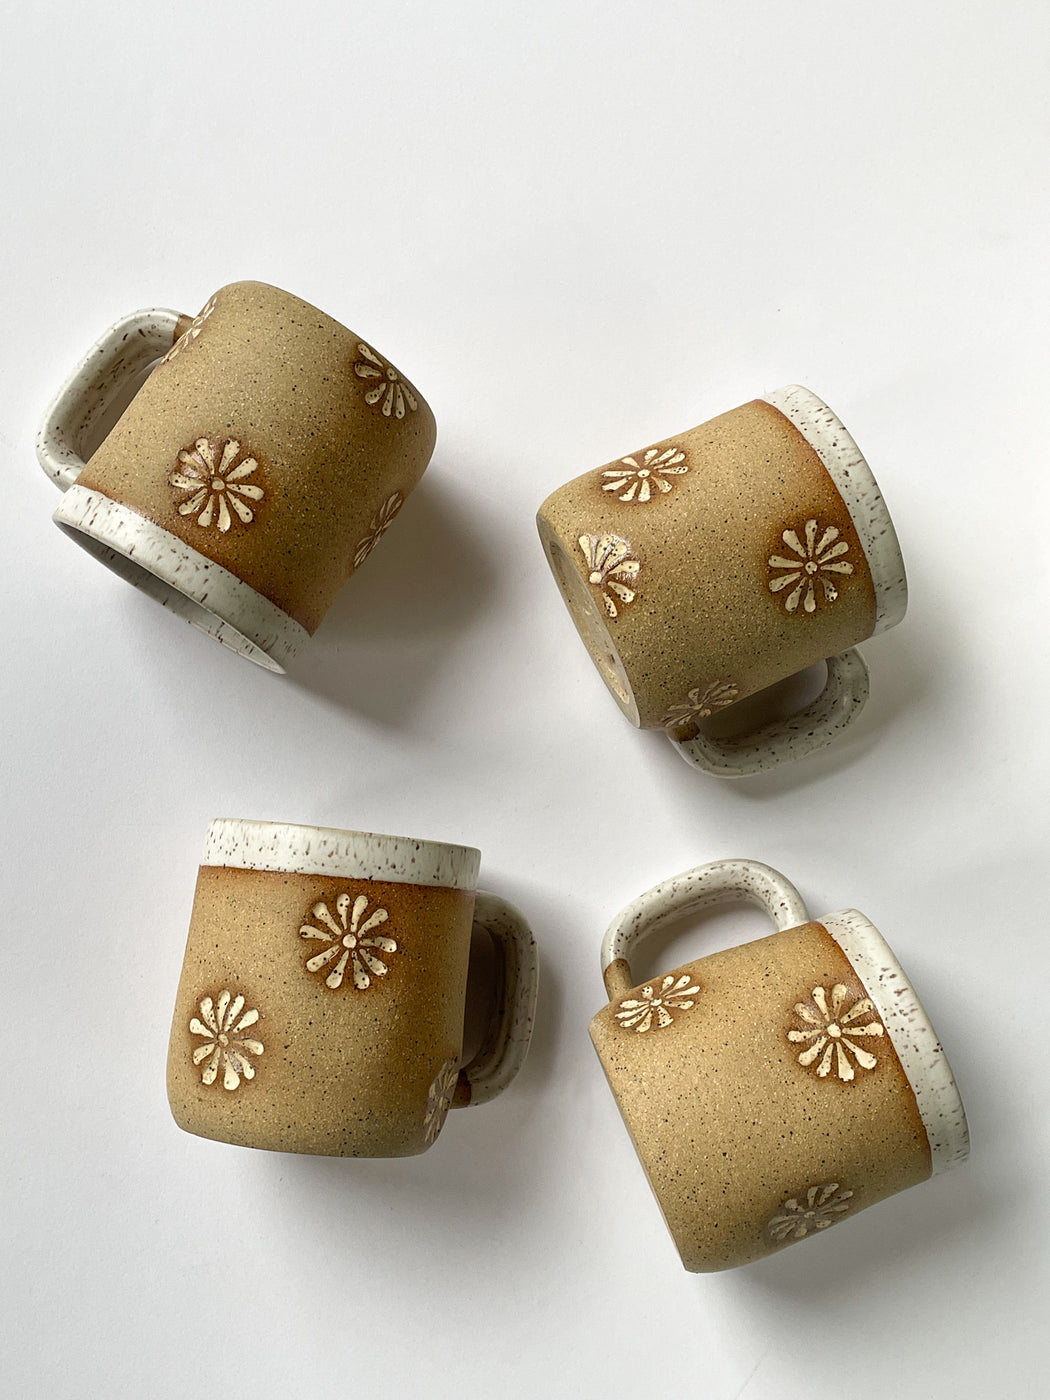 Osso Ceramics - Lazy Daisy Mug